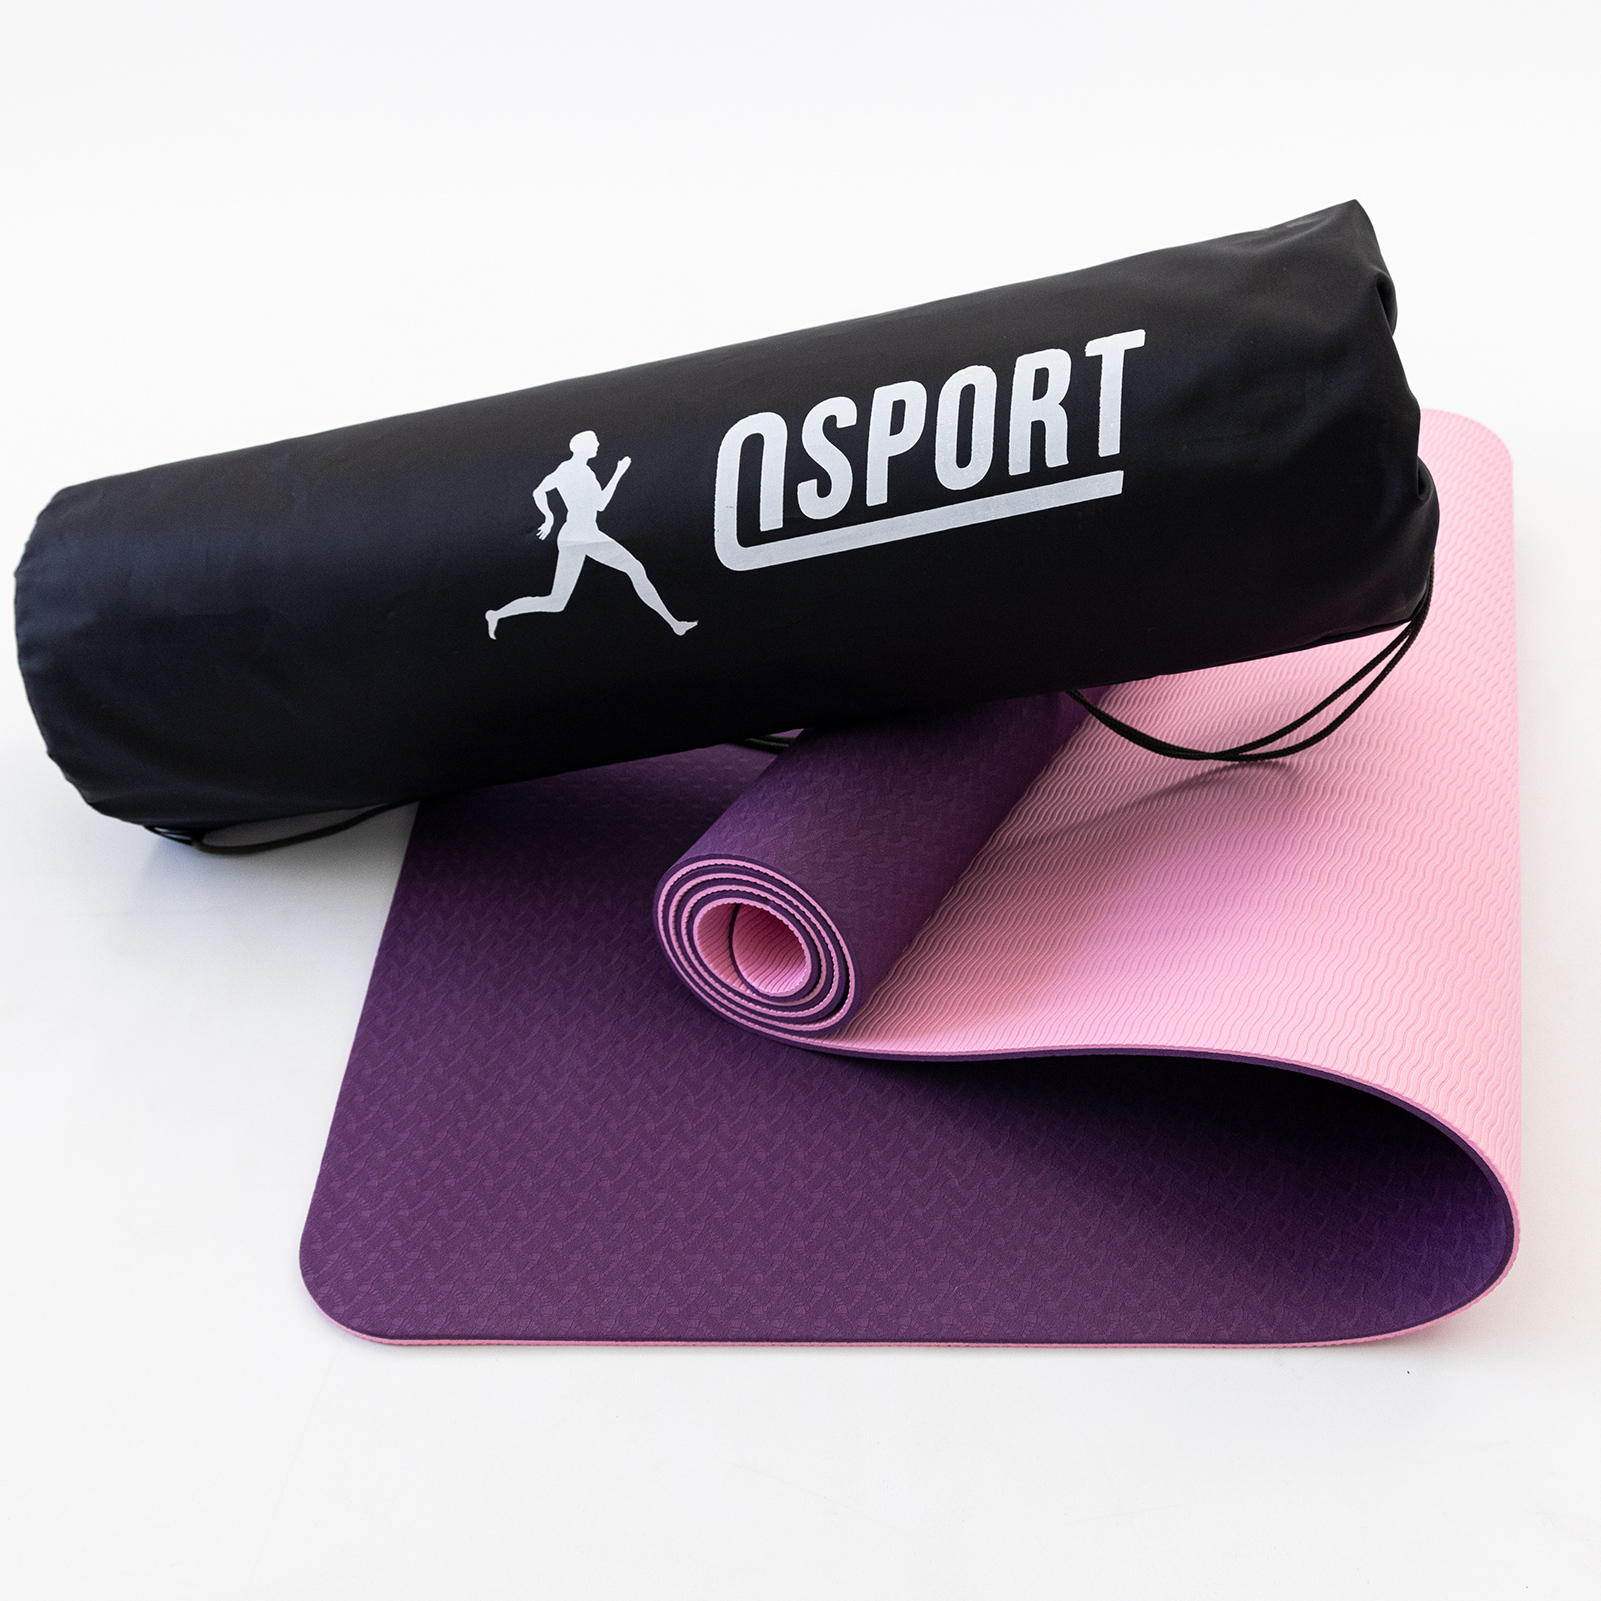  для йоги и фитнеса + чехол (мат, каремат спортивный) OSPORT Yoga .